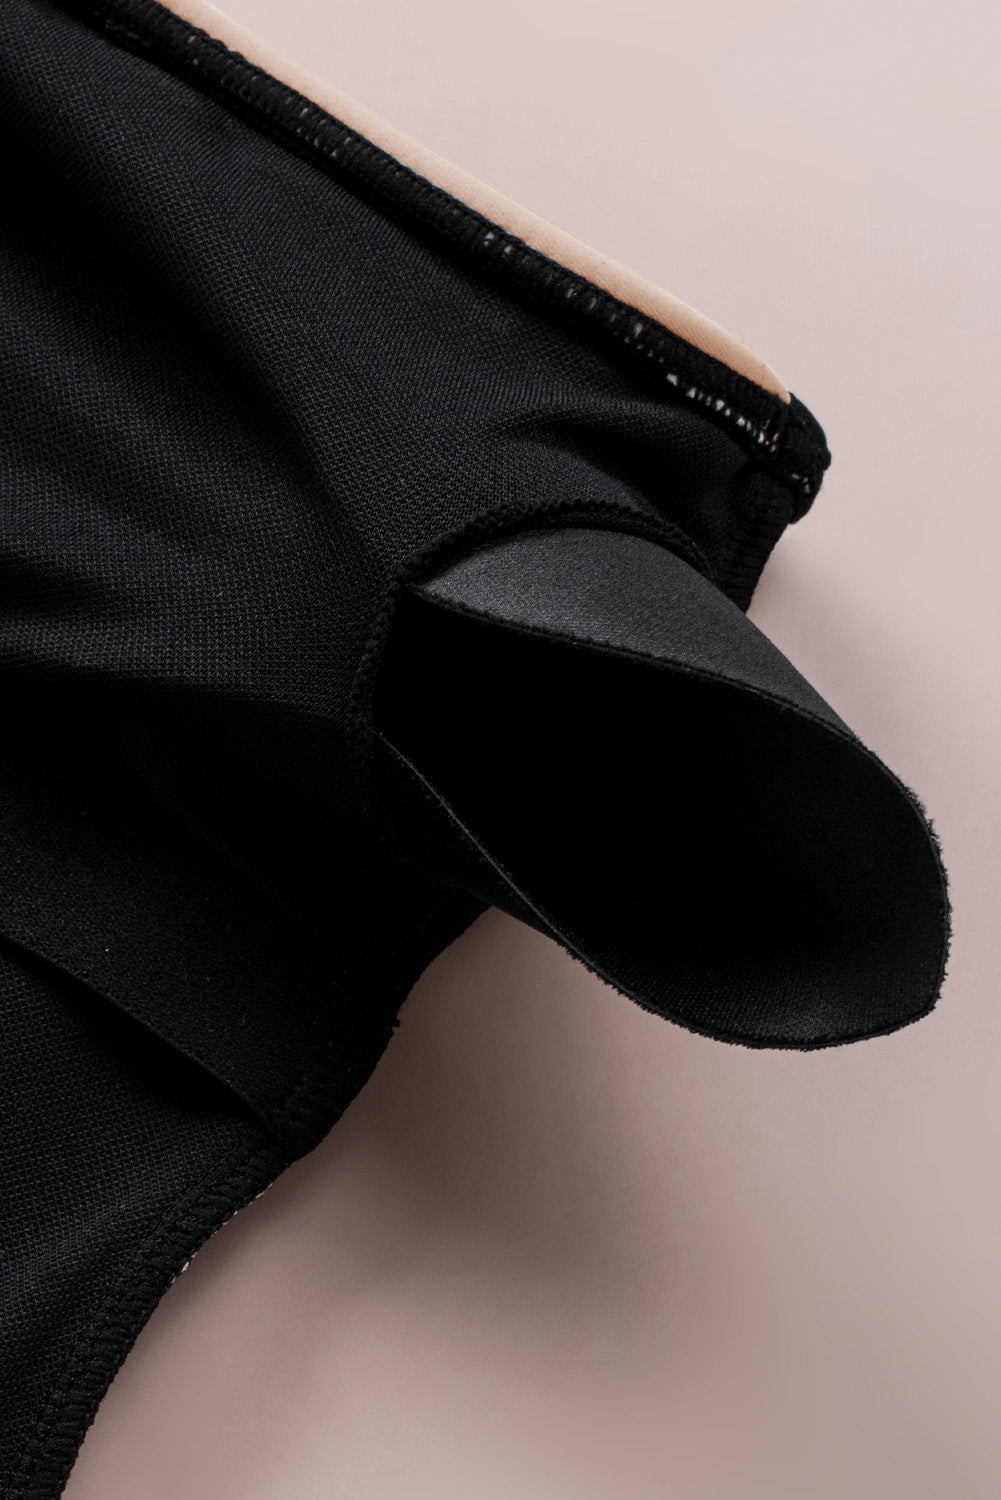 Black Double Straps One Shoulder Color Block Teddy Swimsuit